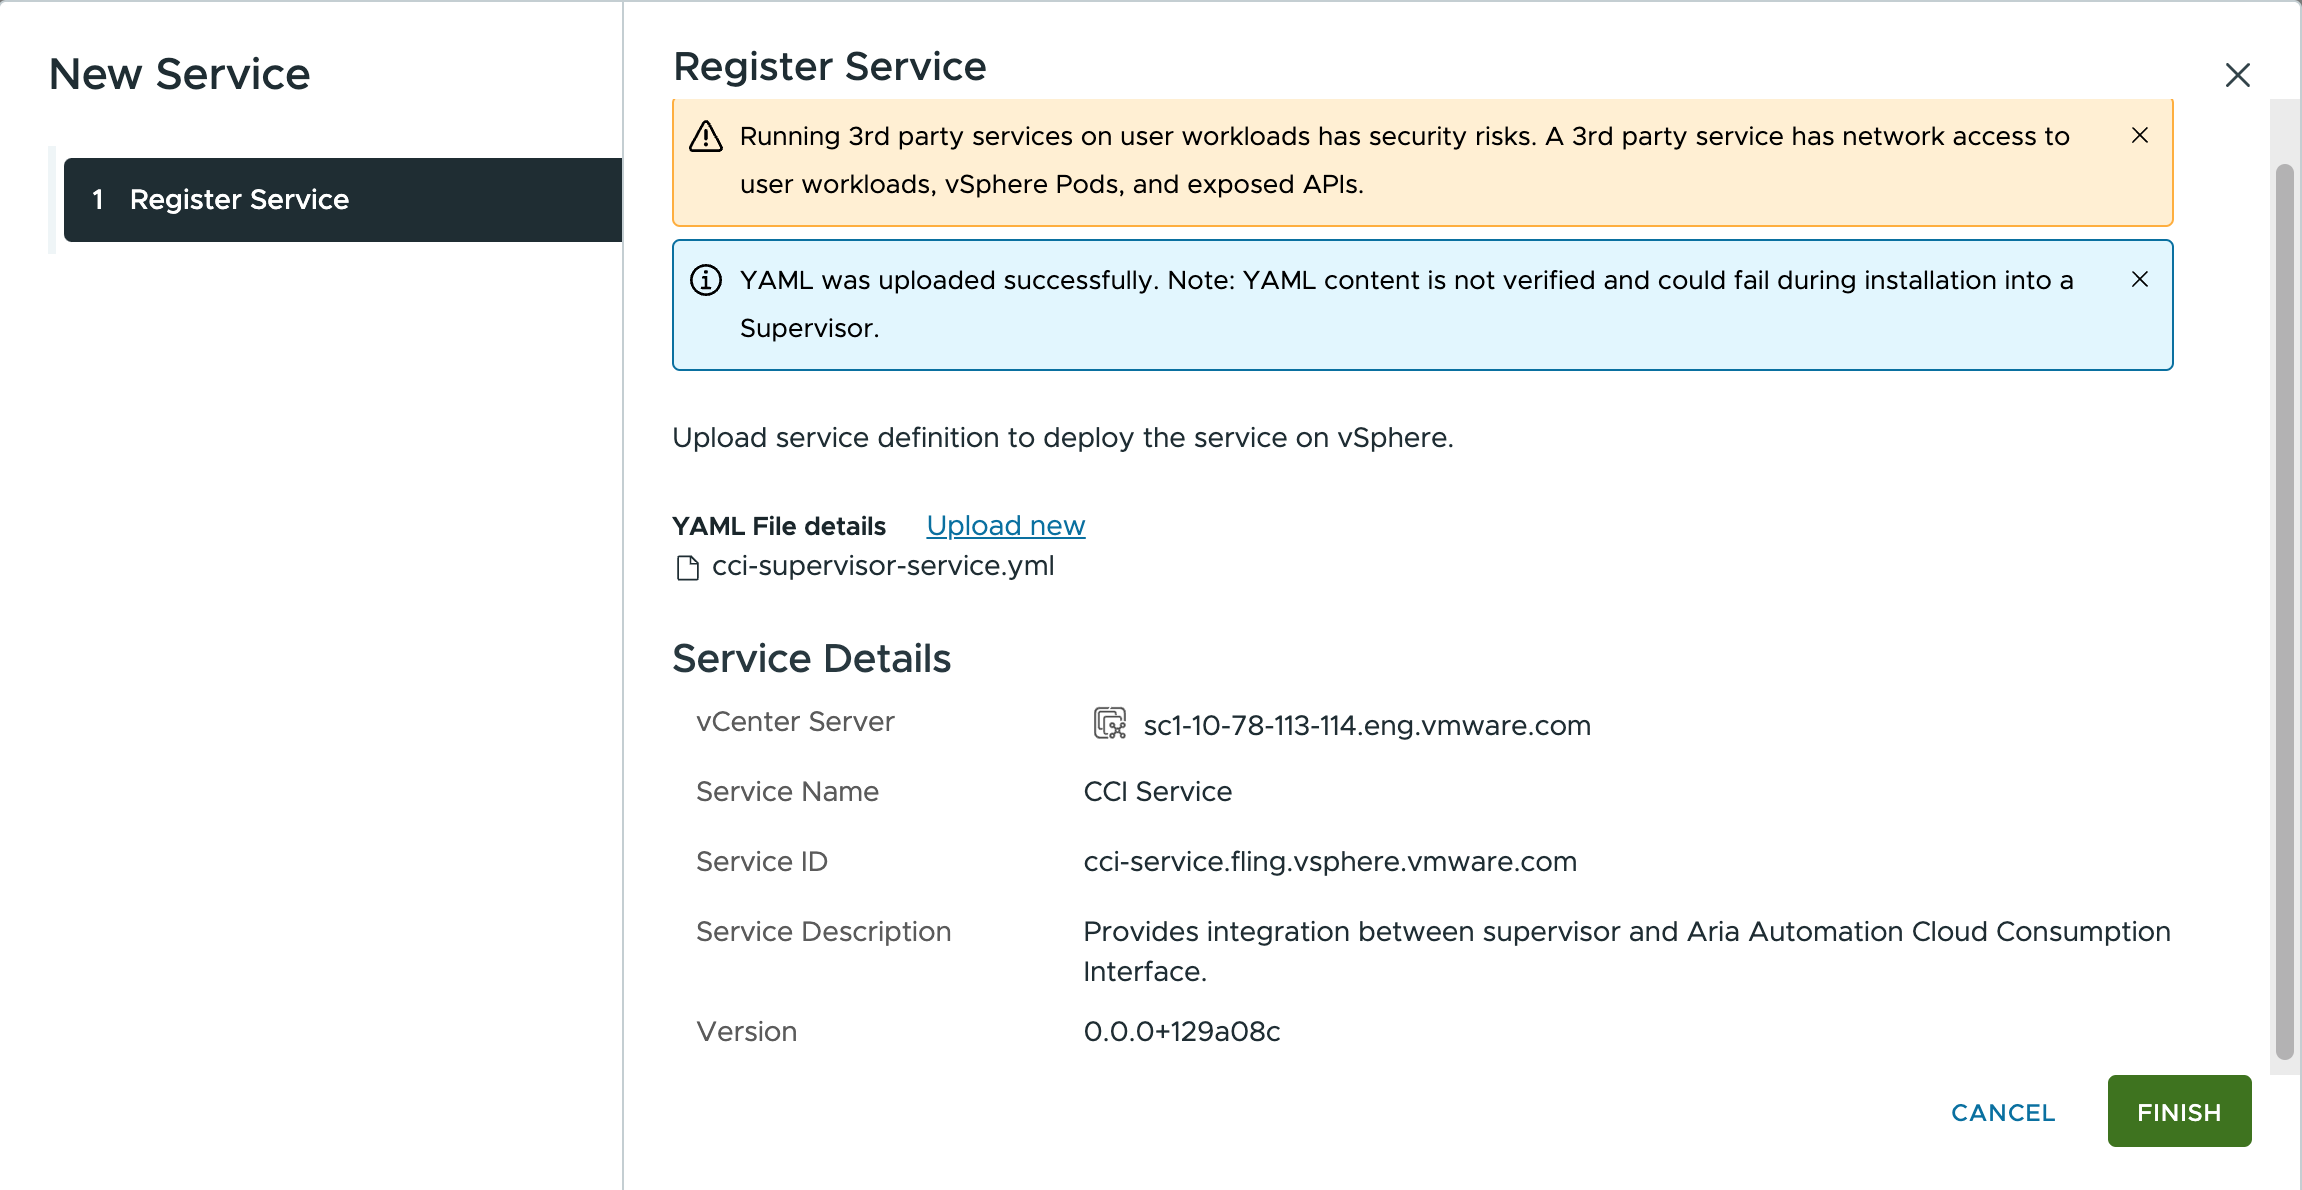 Verificar los detalles del servicio y finalizar el registro del servicio CCI